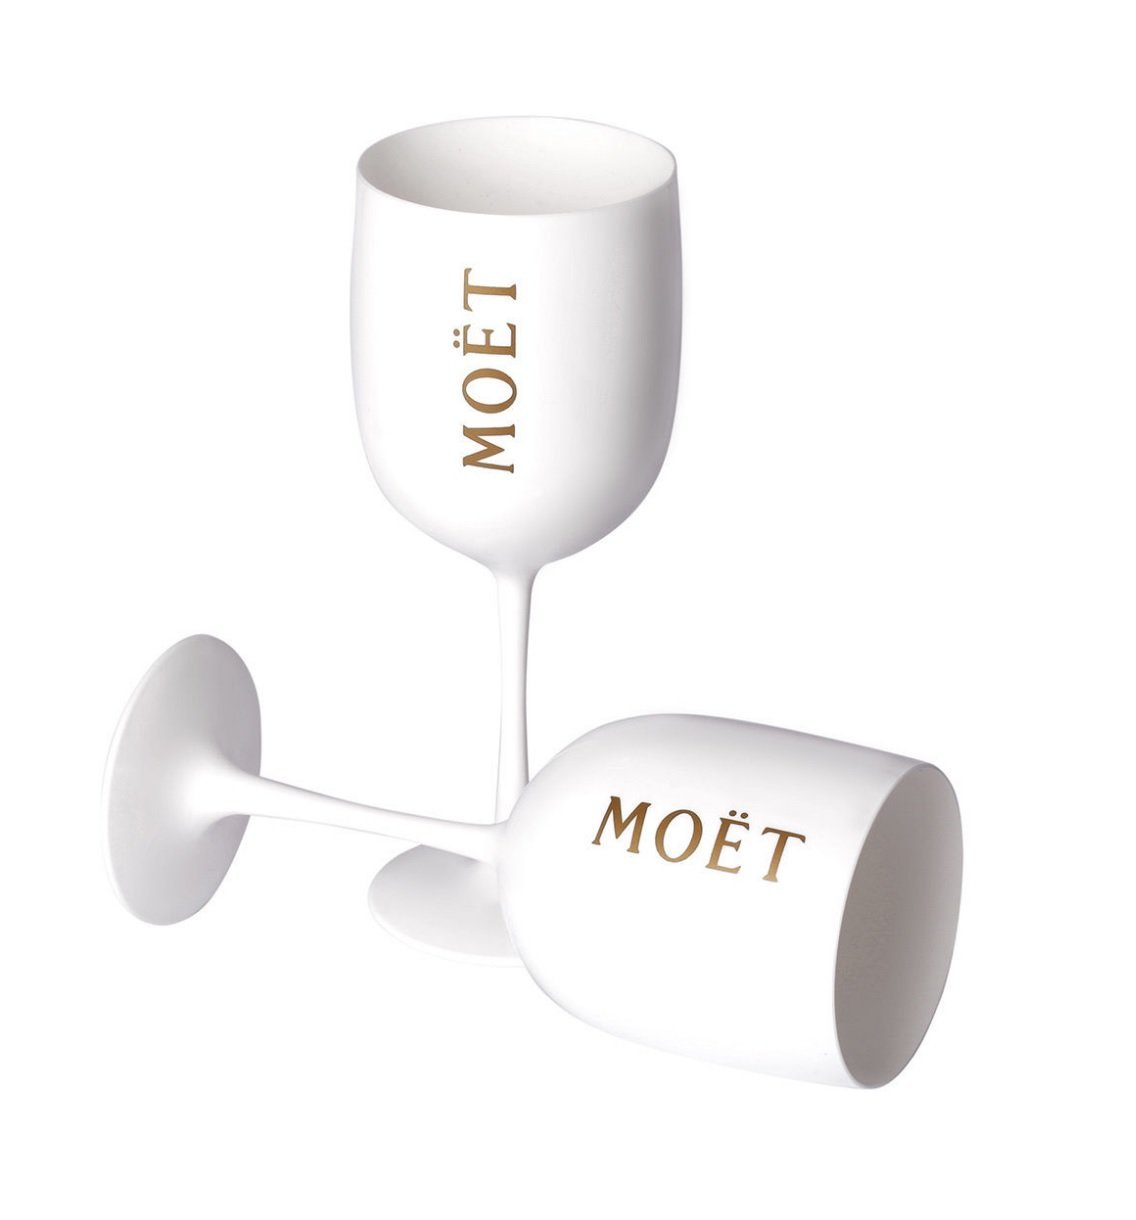 Moët & Chandon White Plastic Champagne Glasses Quantity 2 